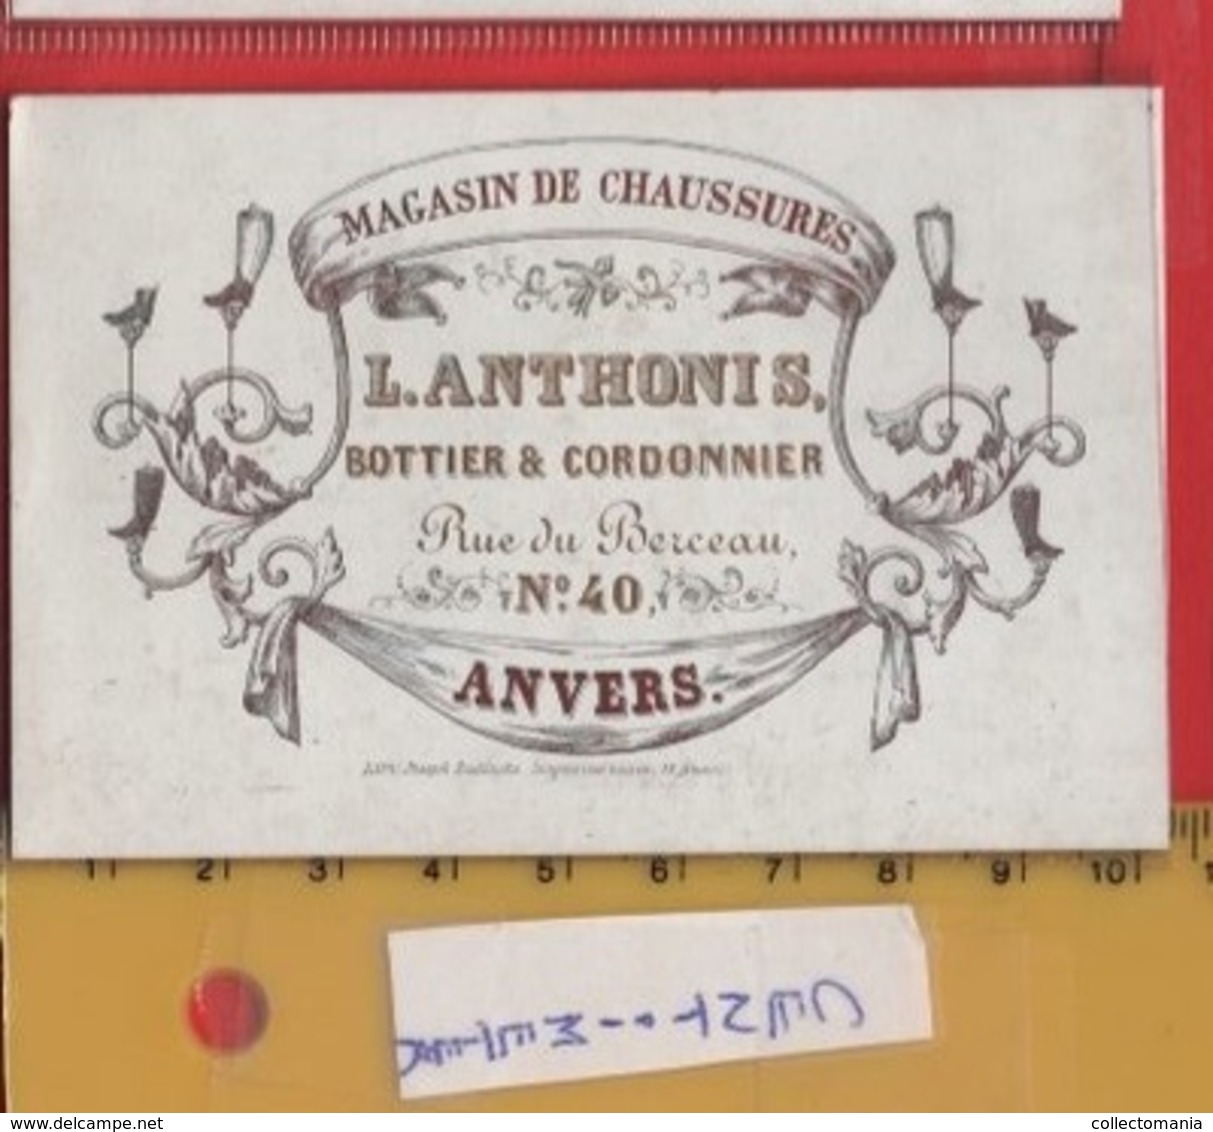 Lot85D: 6 ViSiT Cards, Printer: All  RATiNCKX In ANVERS Antwerpen Porselein Kaarten Circa 1840 à1860 Hand Press Litho - Porcelana